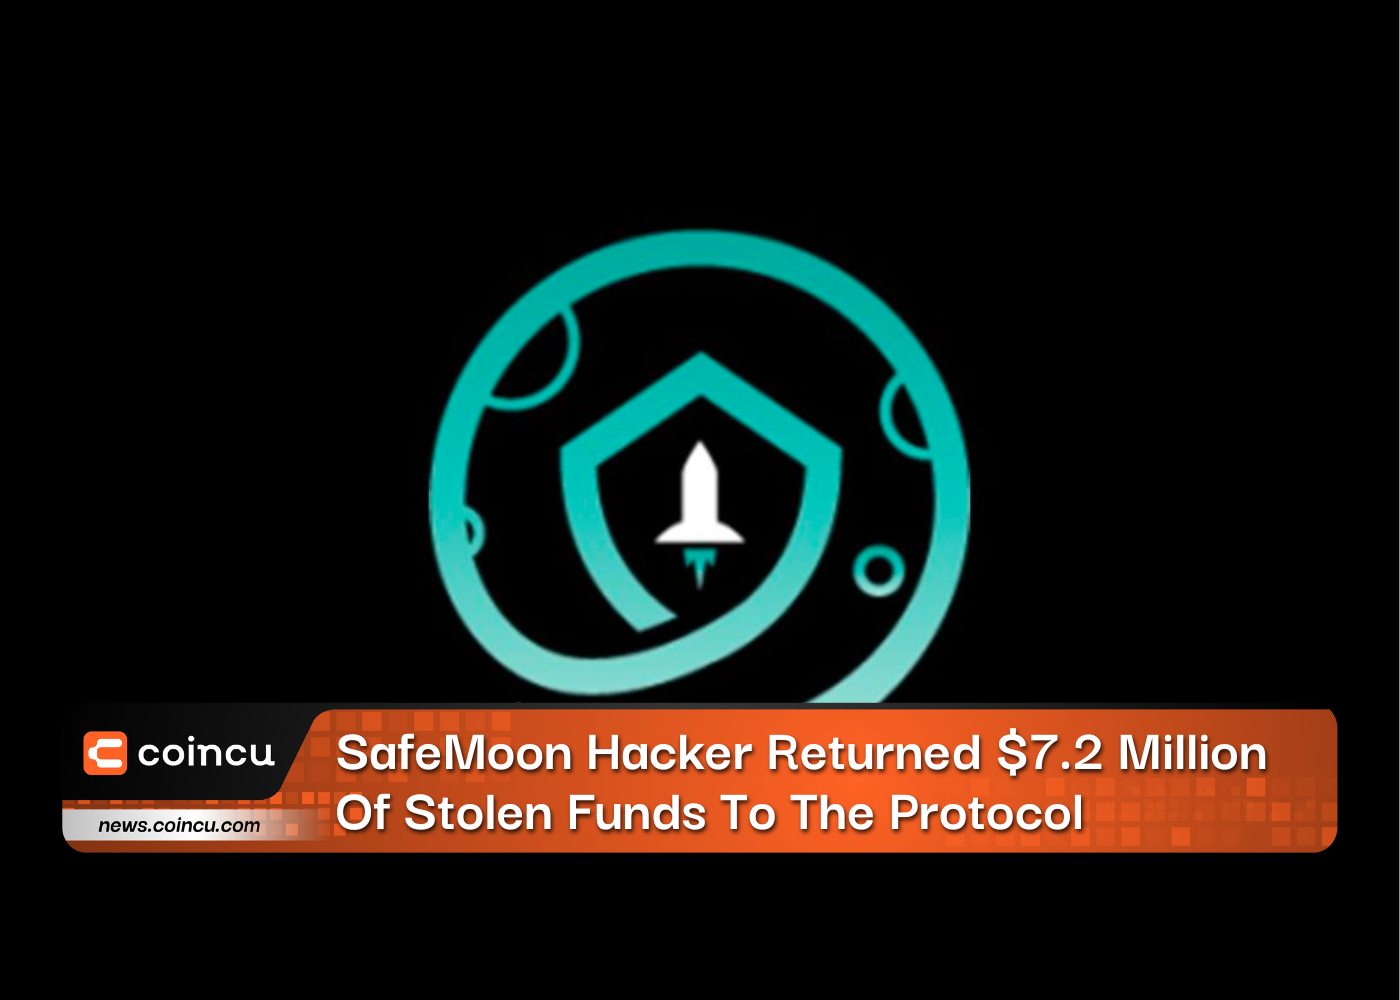 O hacker SafeMoon devolveu US$ 7.2 milhões em fundos roubados ao protocolo